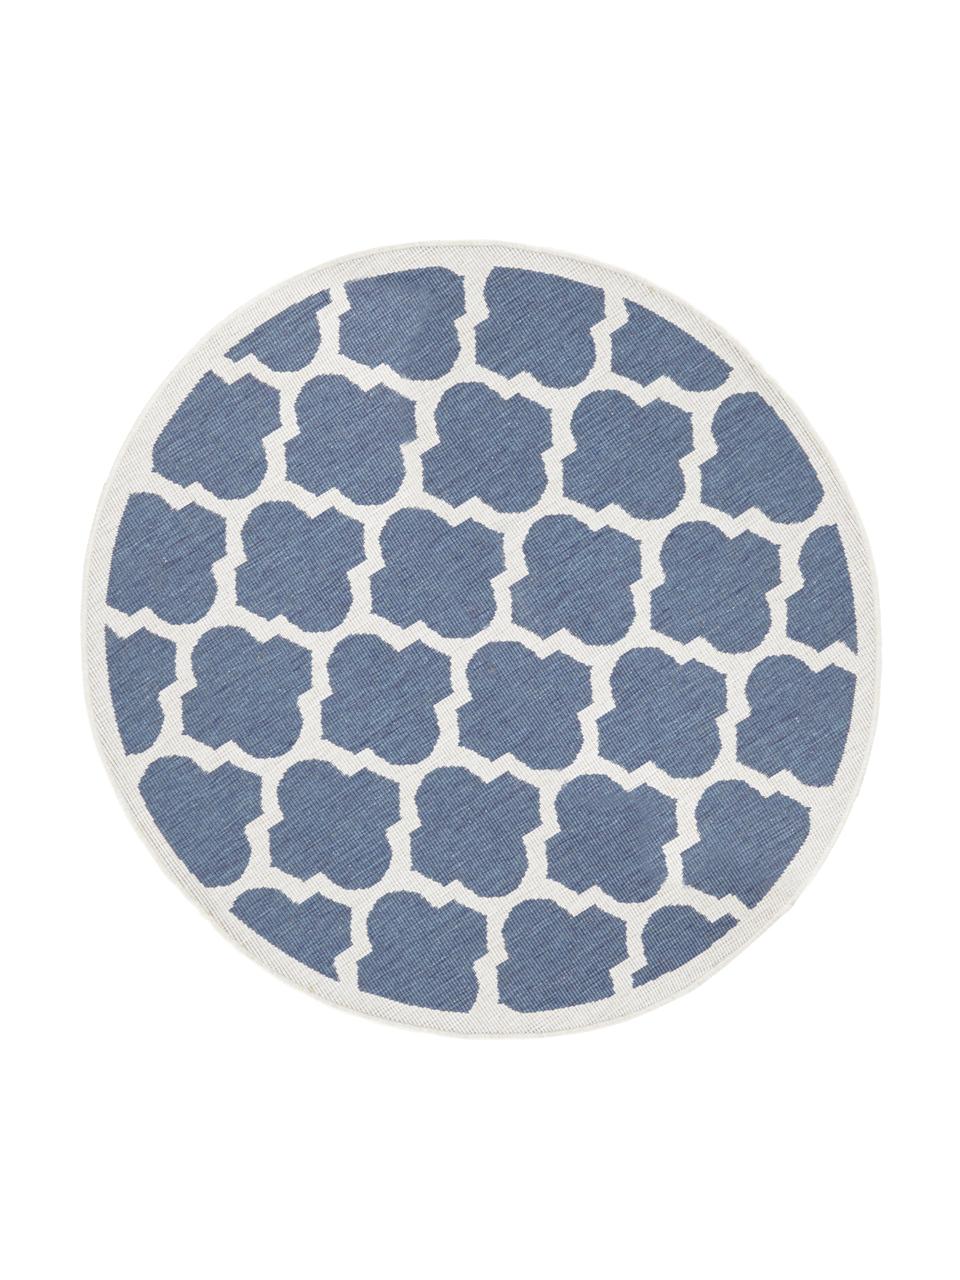 Okrúhly obojstranný koberec do interiéru/exteriéru Palermo, Modrá, krémová